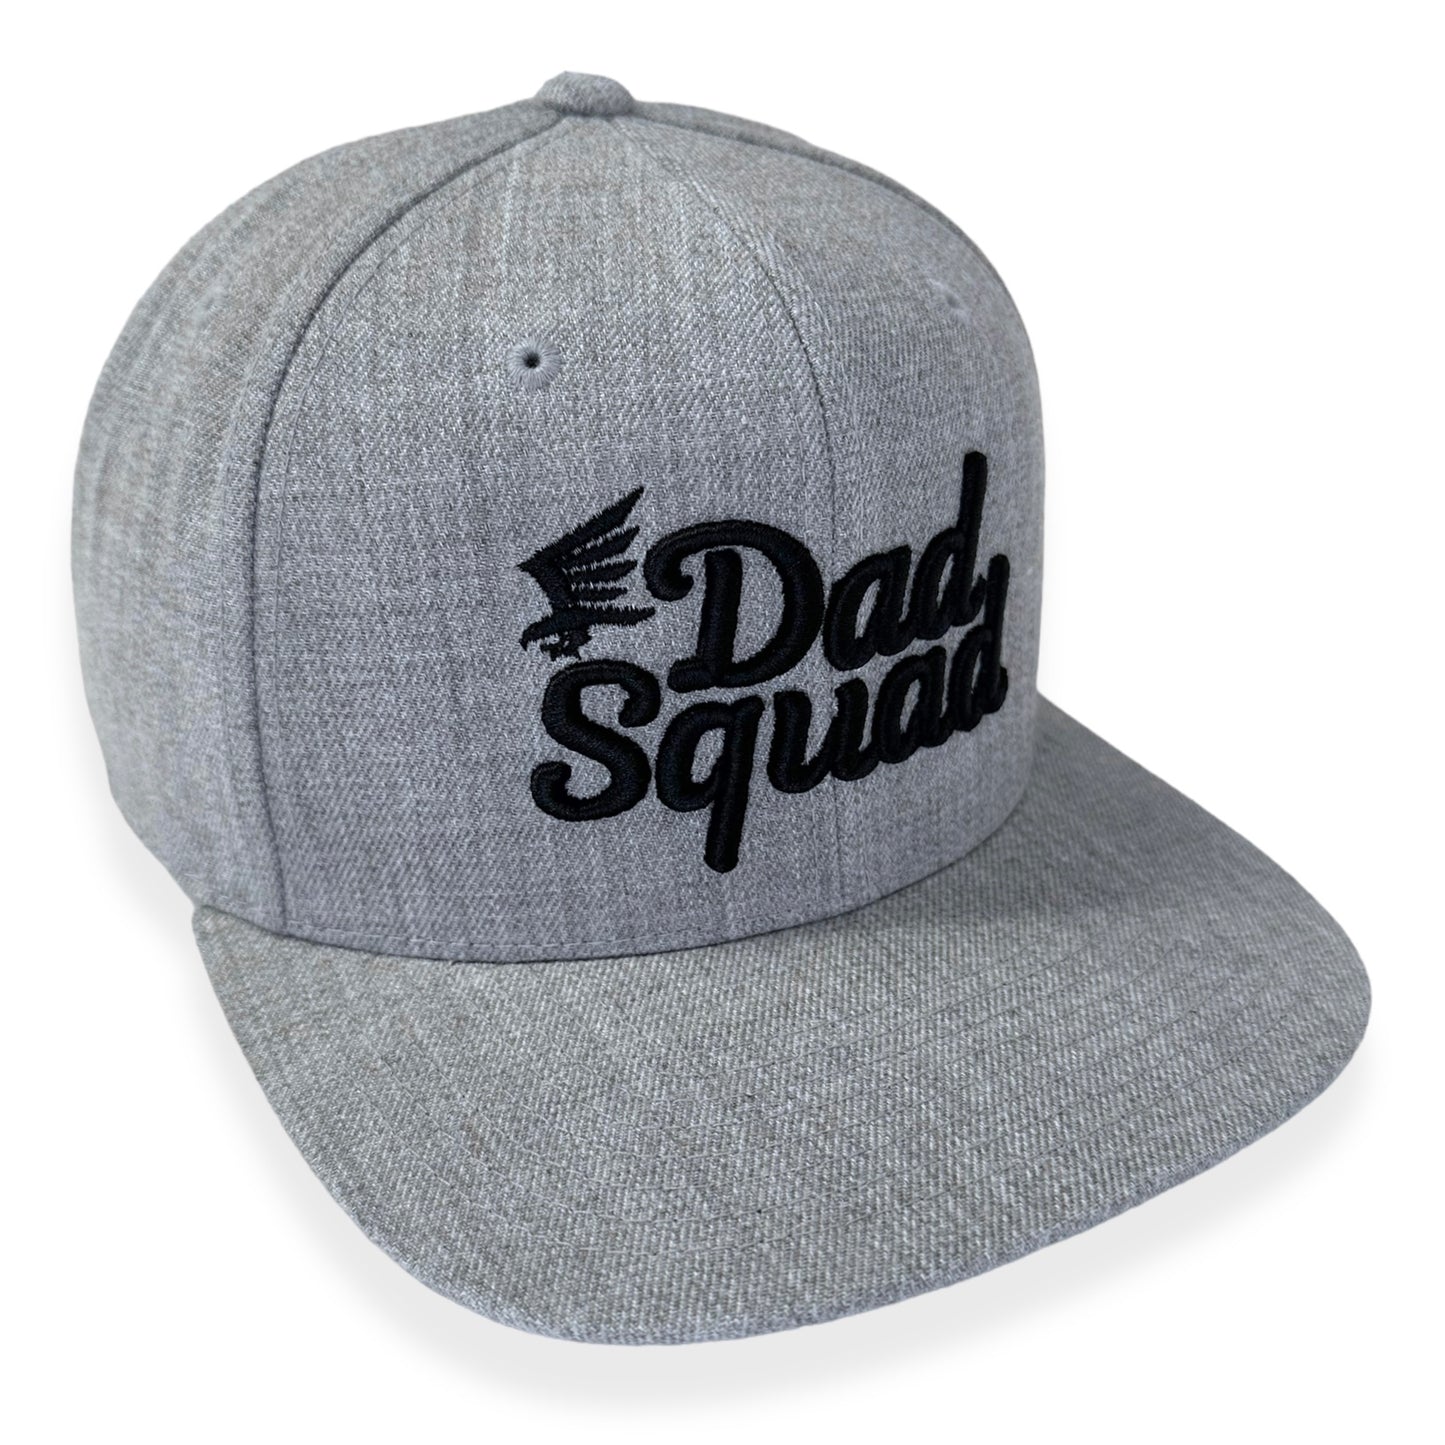 Dad Squad Flat Bill Hat - Heather Grey